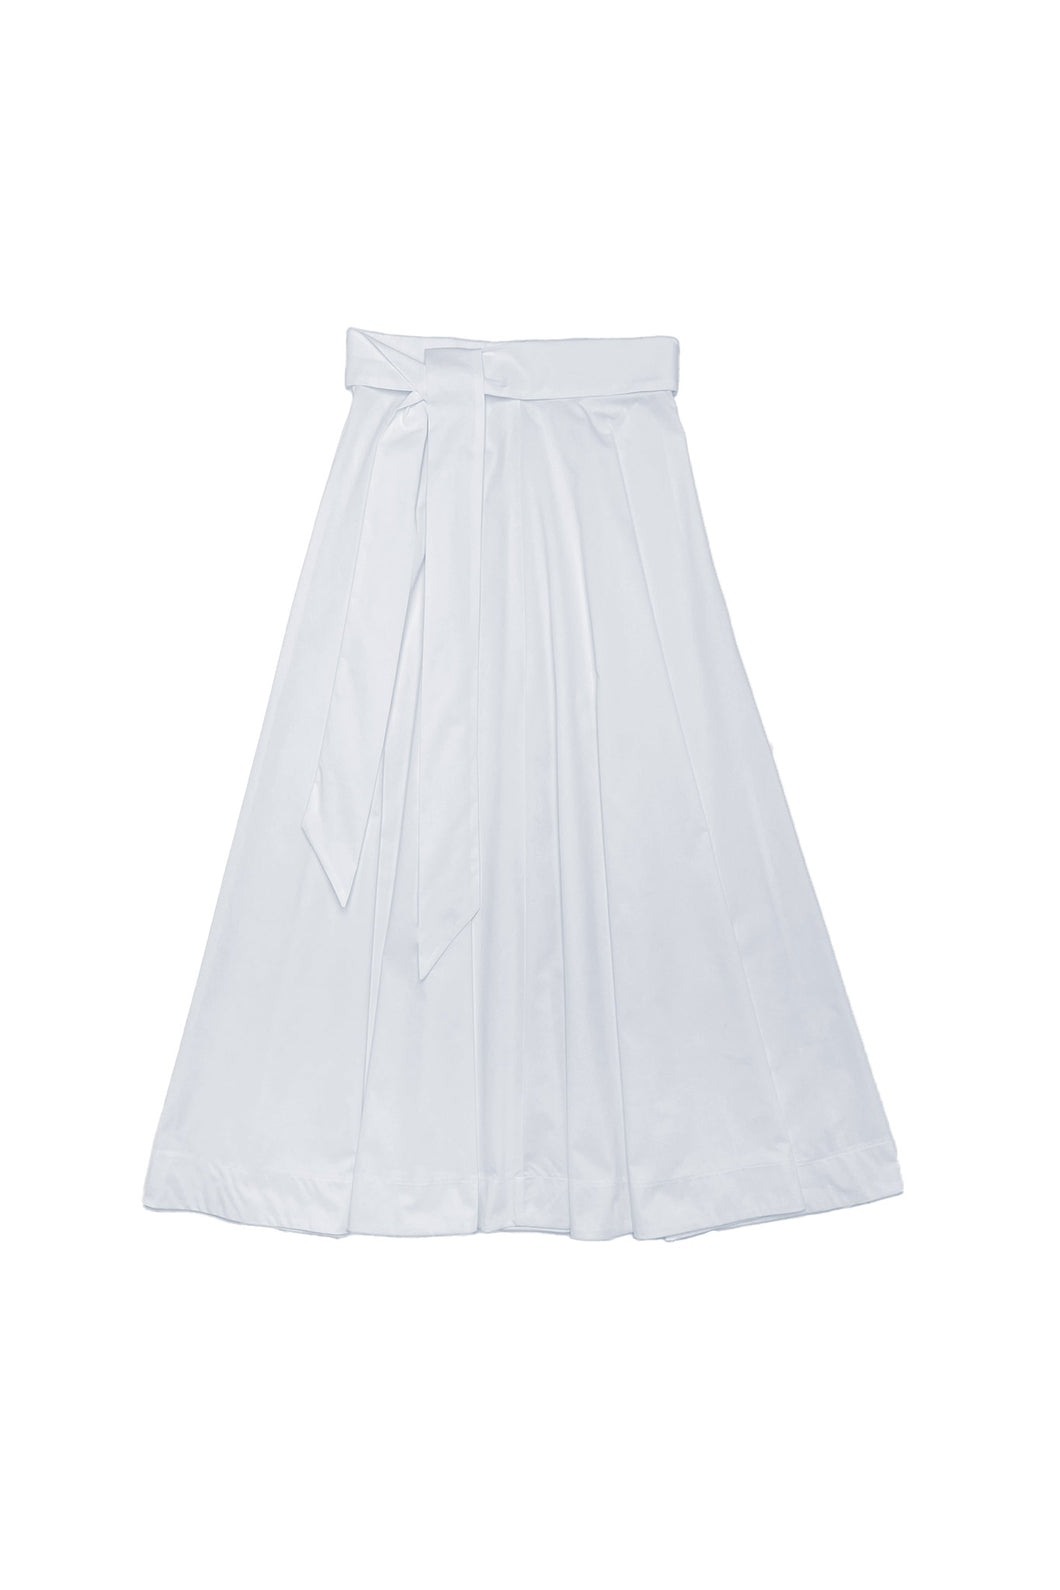 Anais Skirt in White #8303